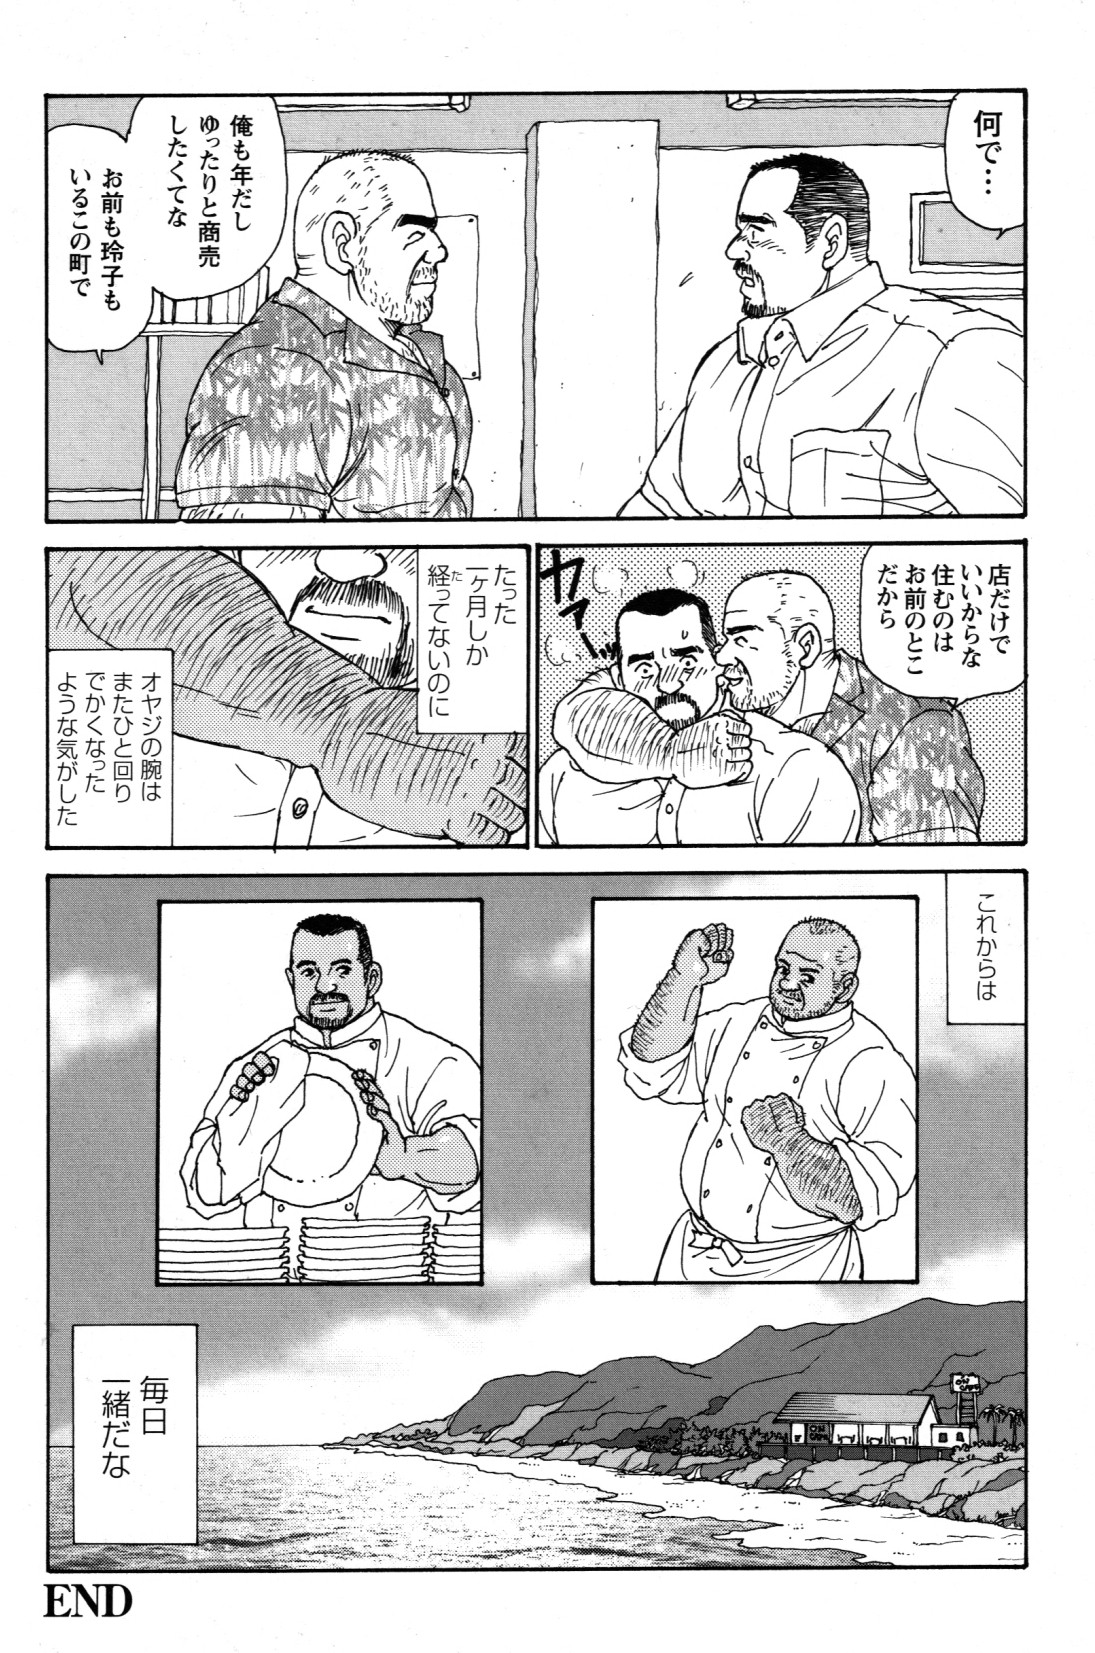 [Sugajima Satoru] Oyaji no Ude | Dad's Arms (Comic G-men Gaho No. 03) [菅嶋さとる] オヤジの腕 (コミックG.G. No. 03)